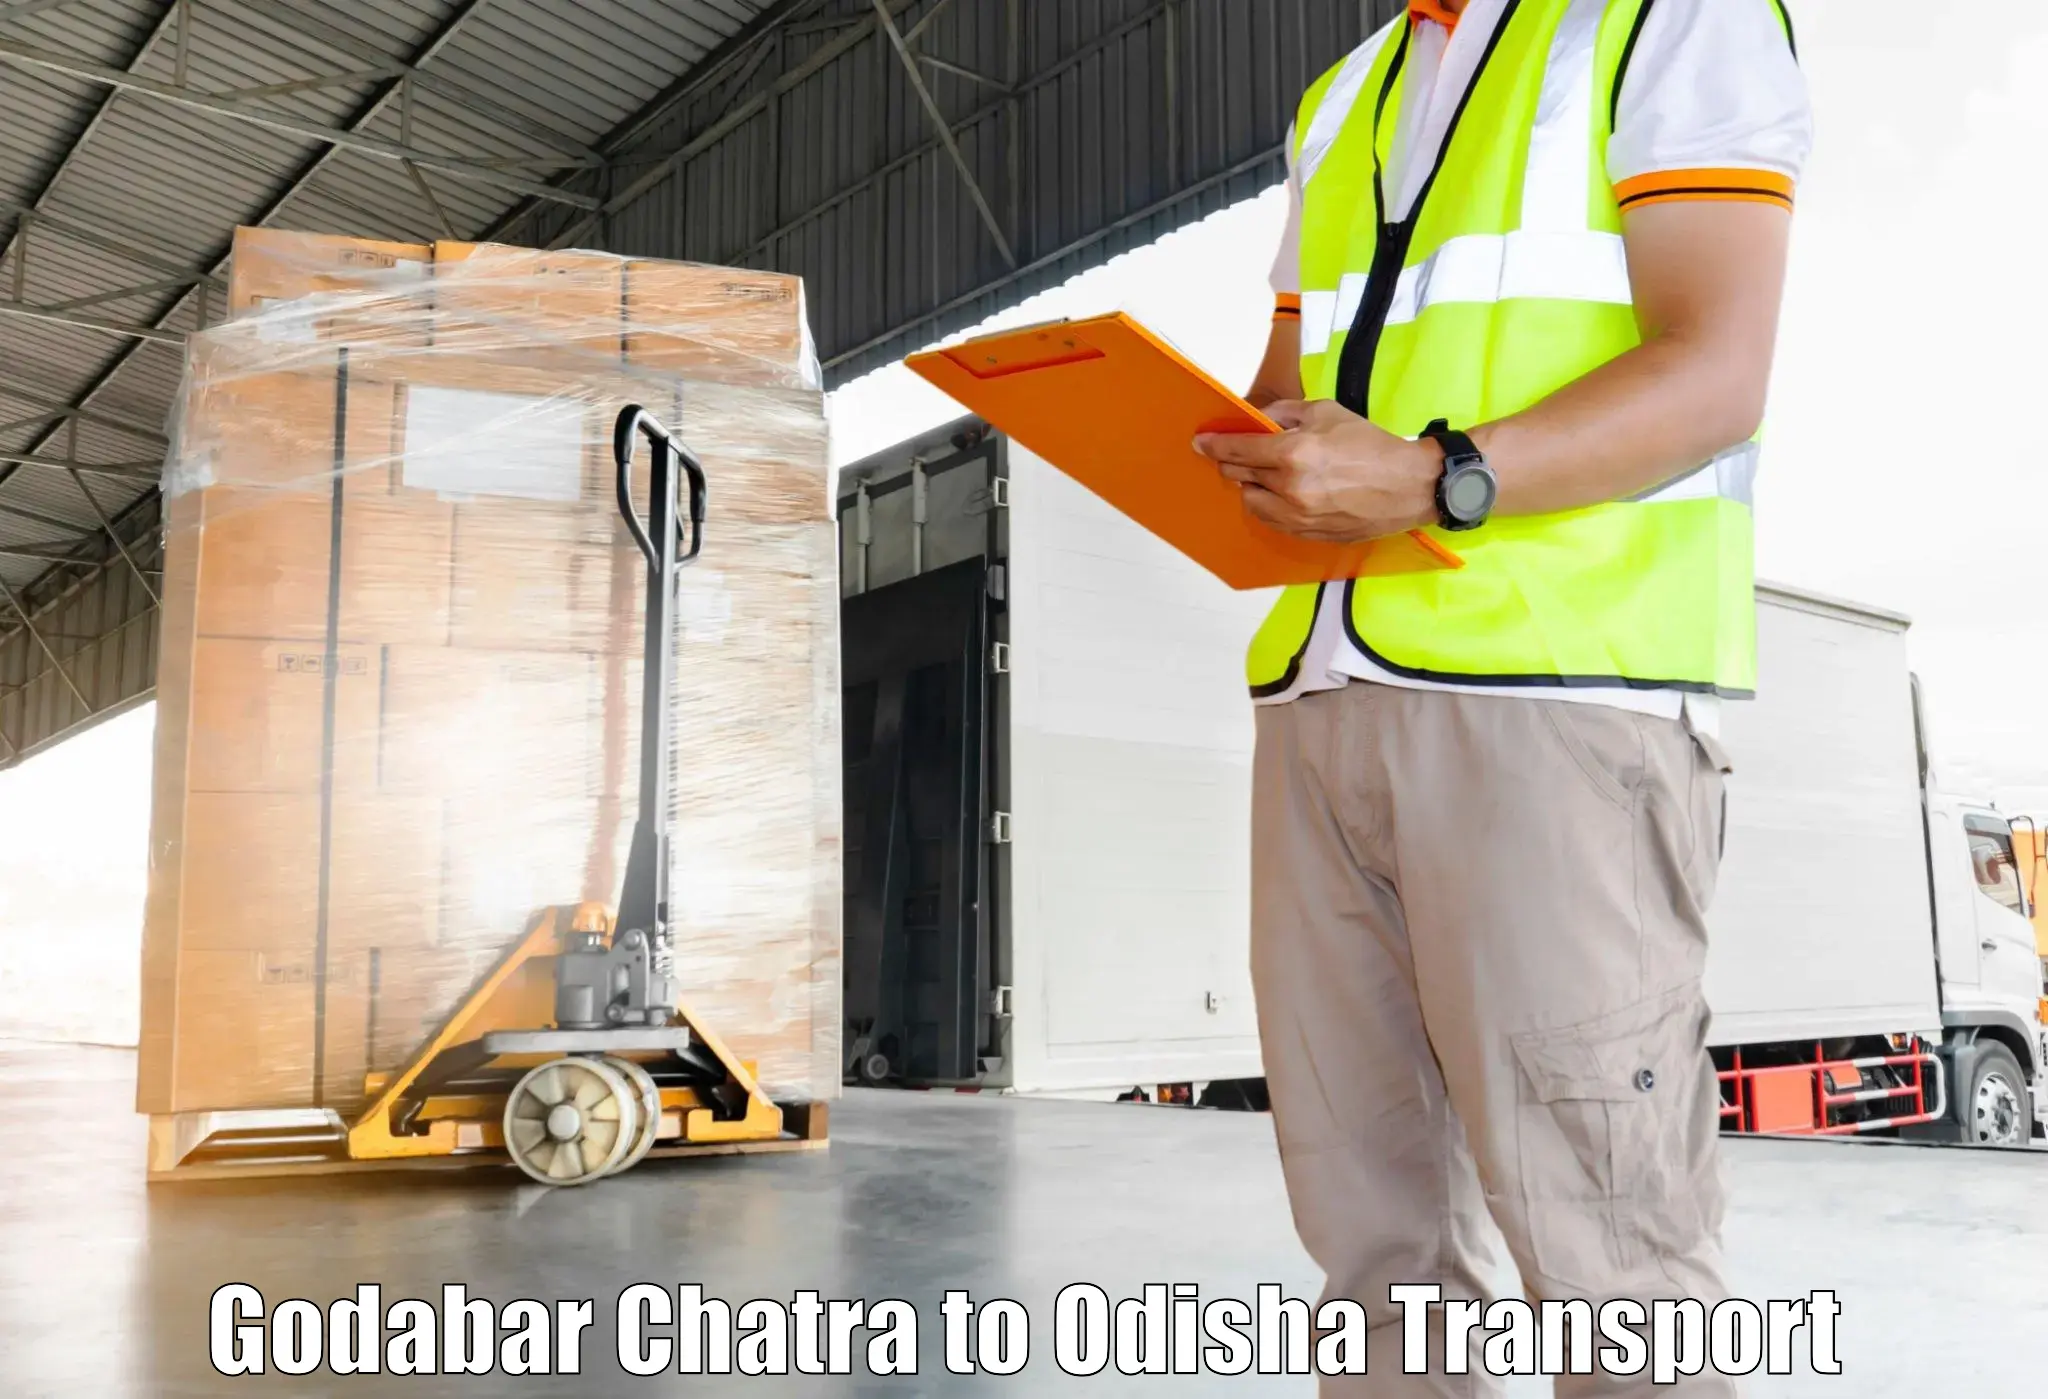 Cargo transport services Godabar Chatra to Mathili